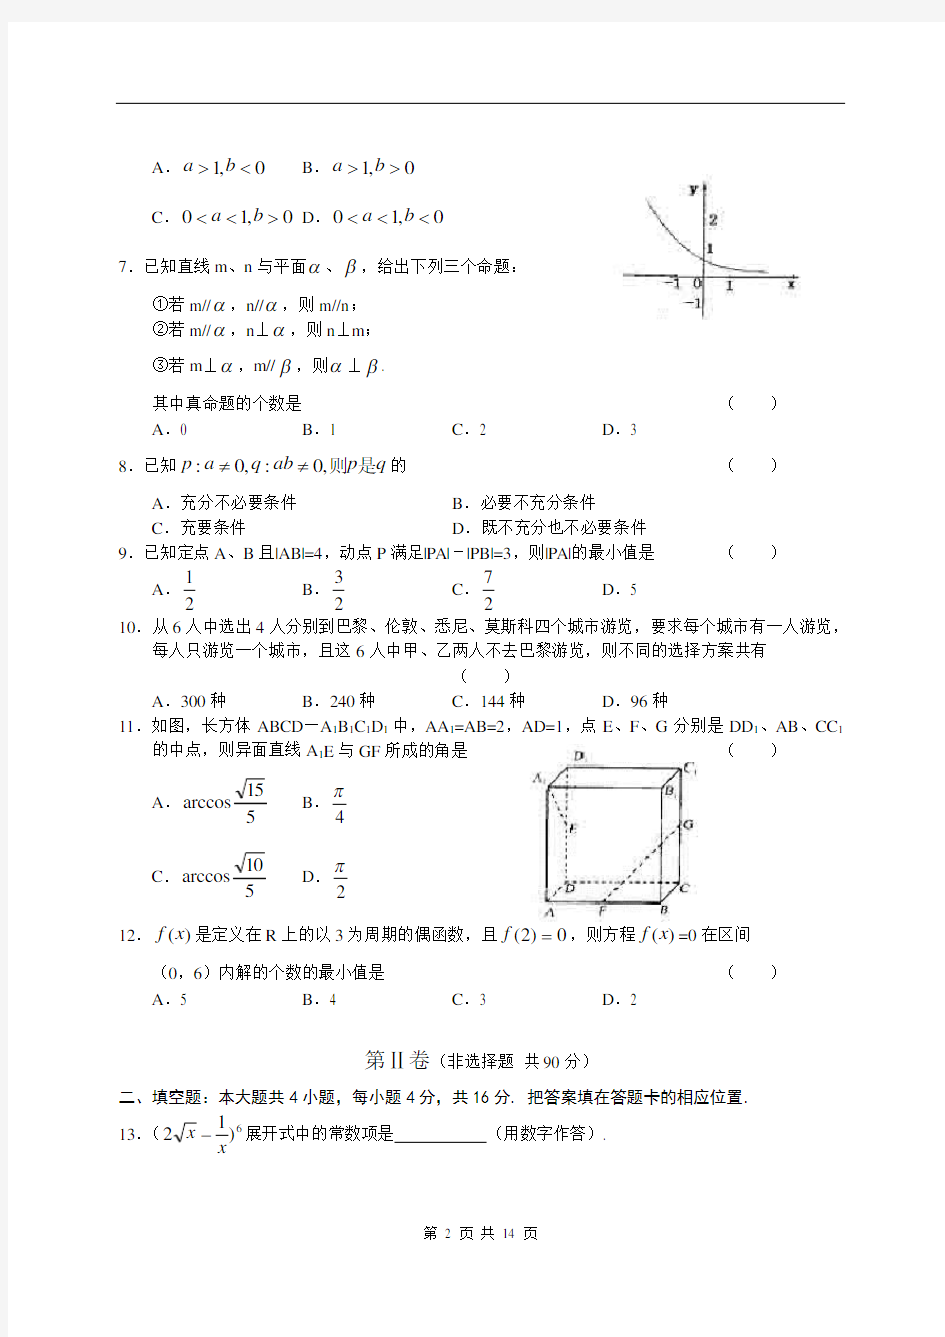 2005年高考文科数学试卷及答案(福建)